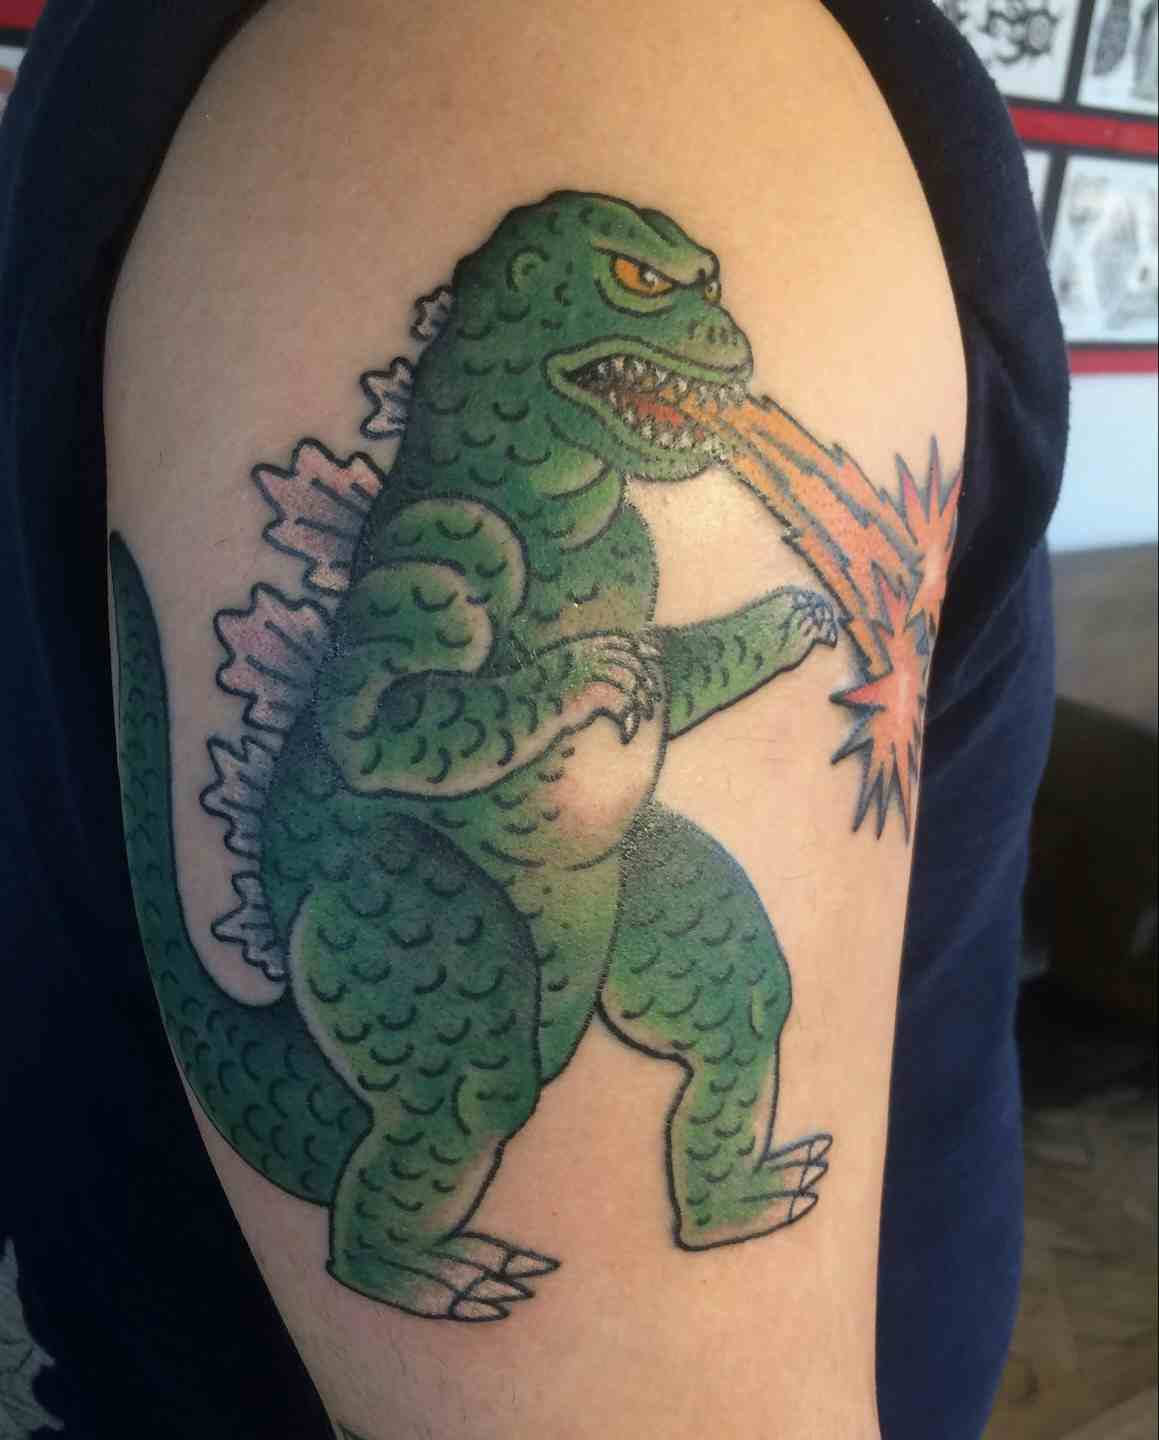 Godzilla tattoo